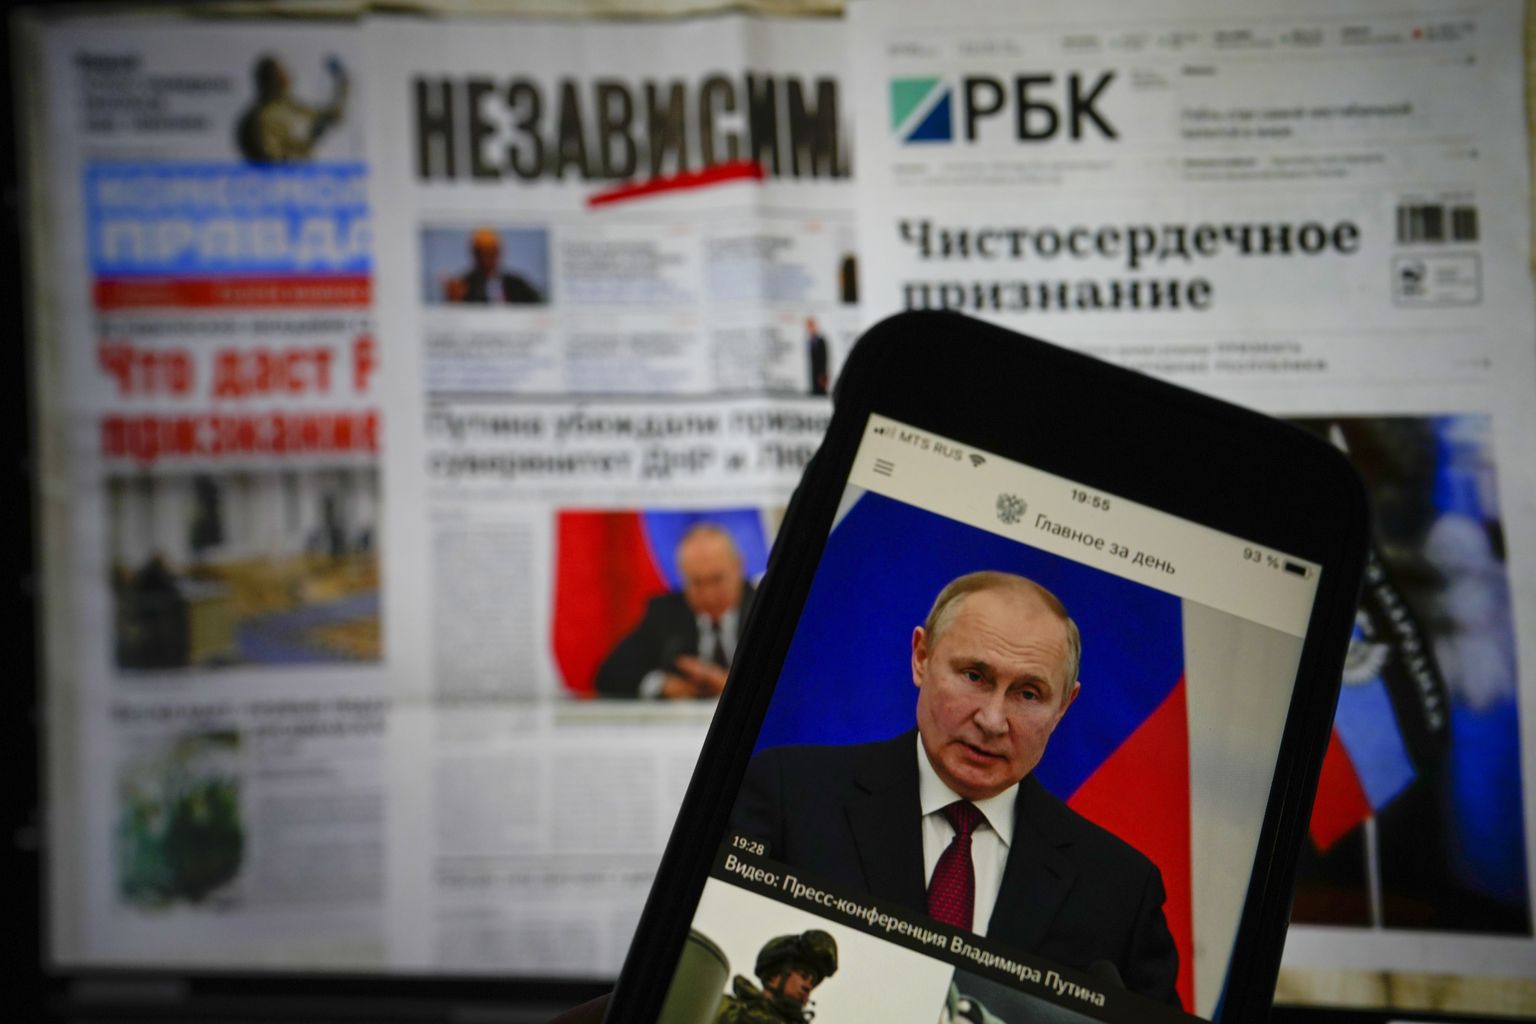 Российские газеты и россиянин, читающий новости на своем iPhone. Фото сделано 22 февраля 2022 г. Два дня спустя, 24 февраля 2022 г., российские войска вторглись в Украину.